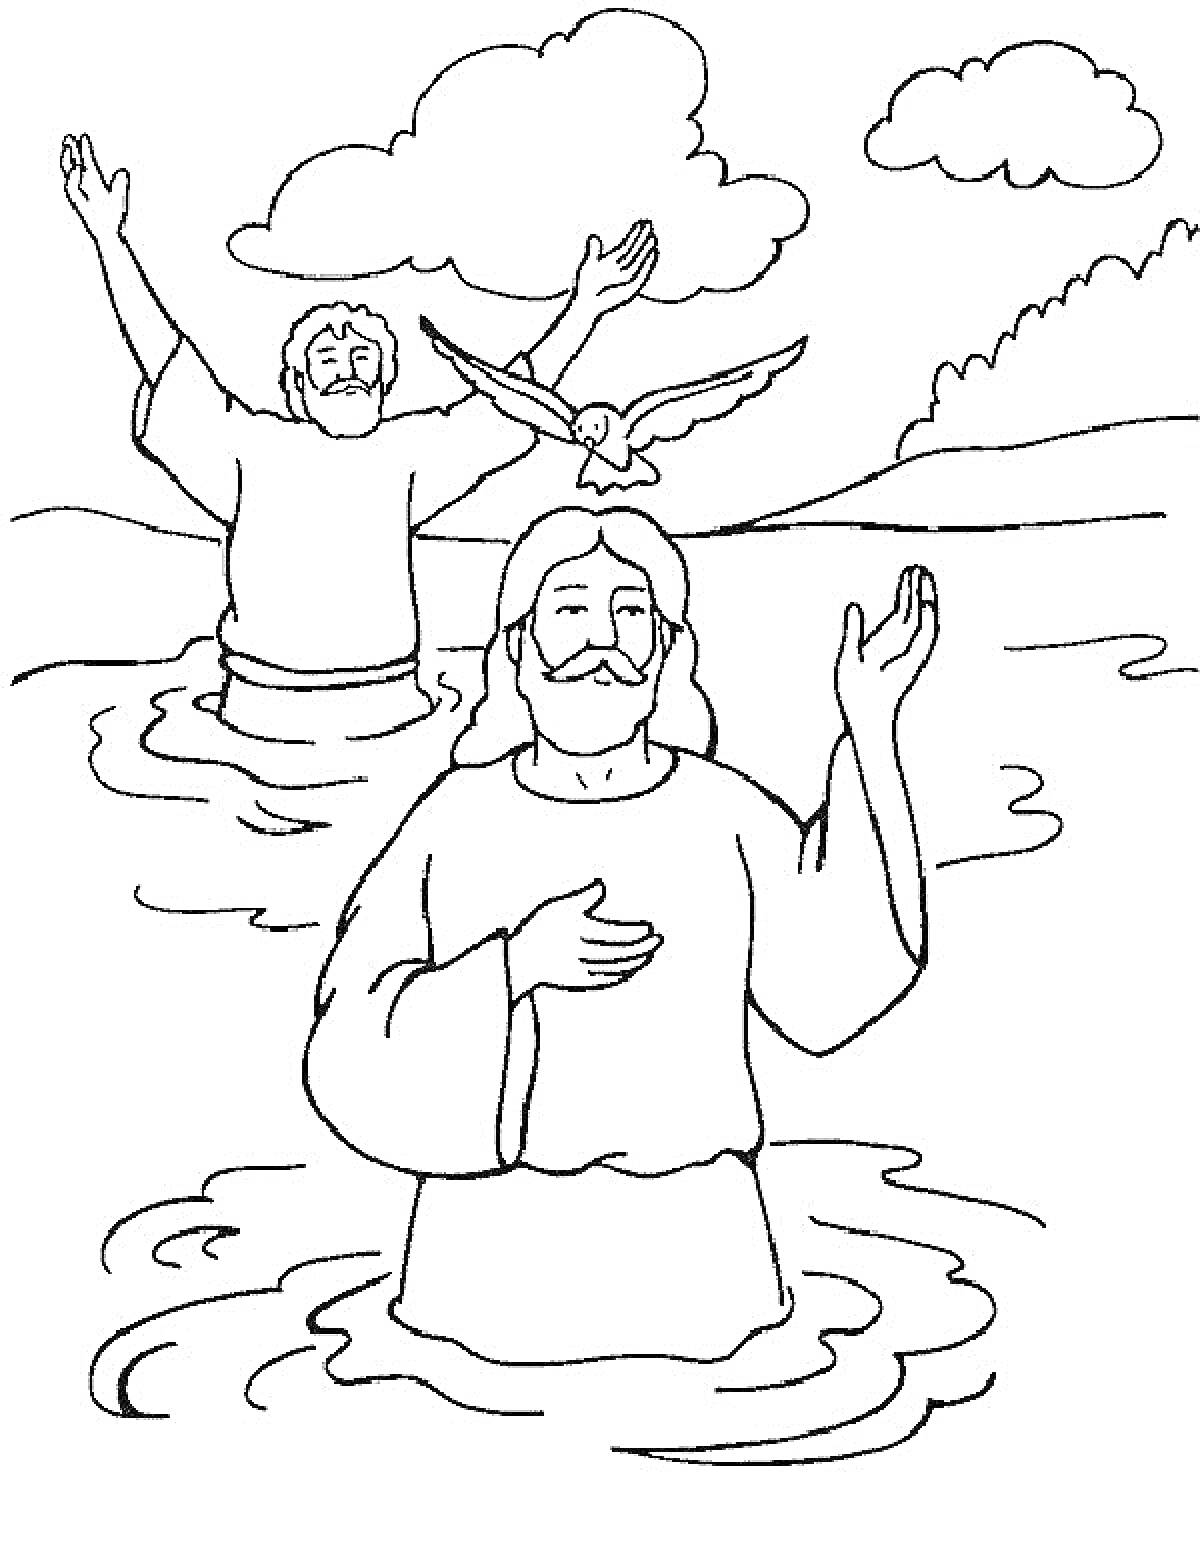 Крещение в реке с двумя людьми и голубем